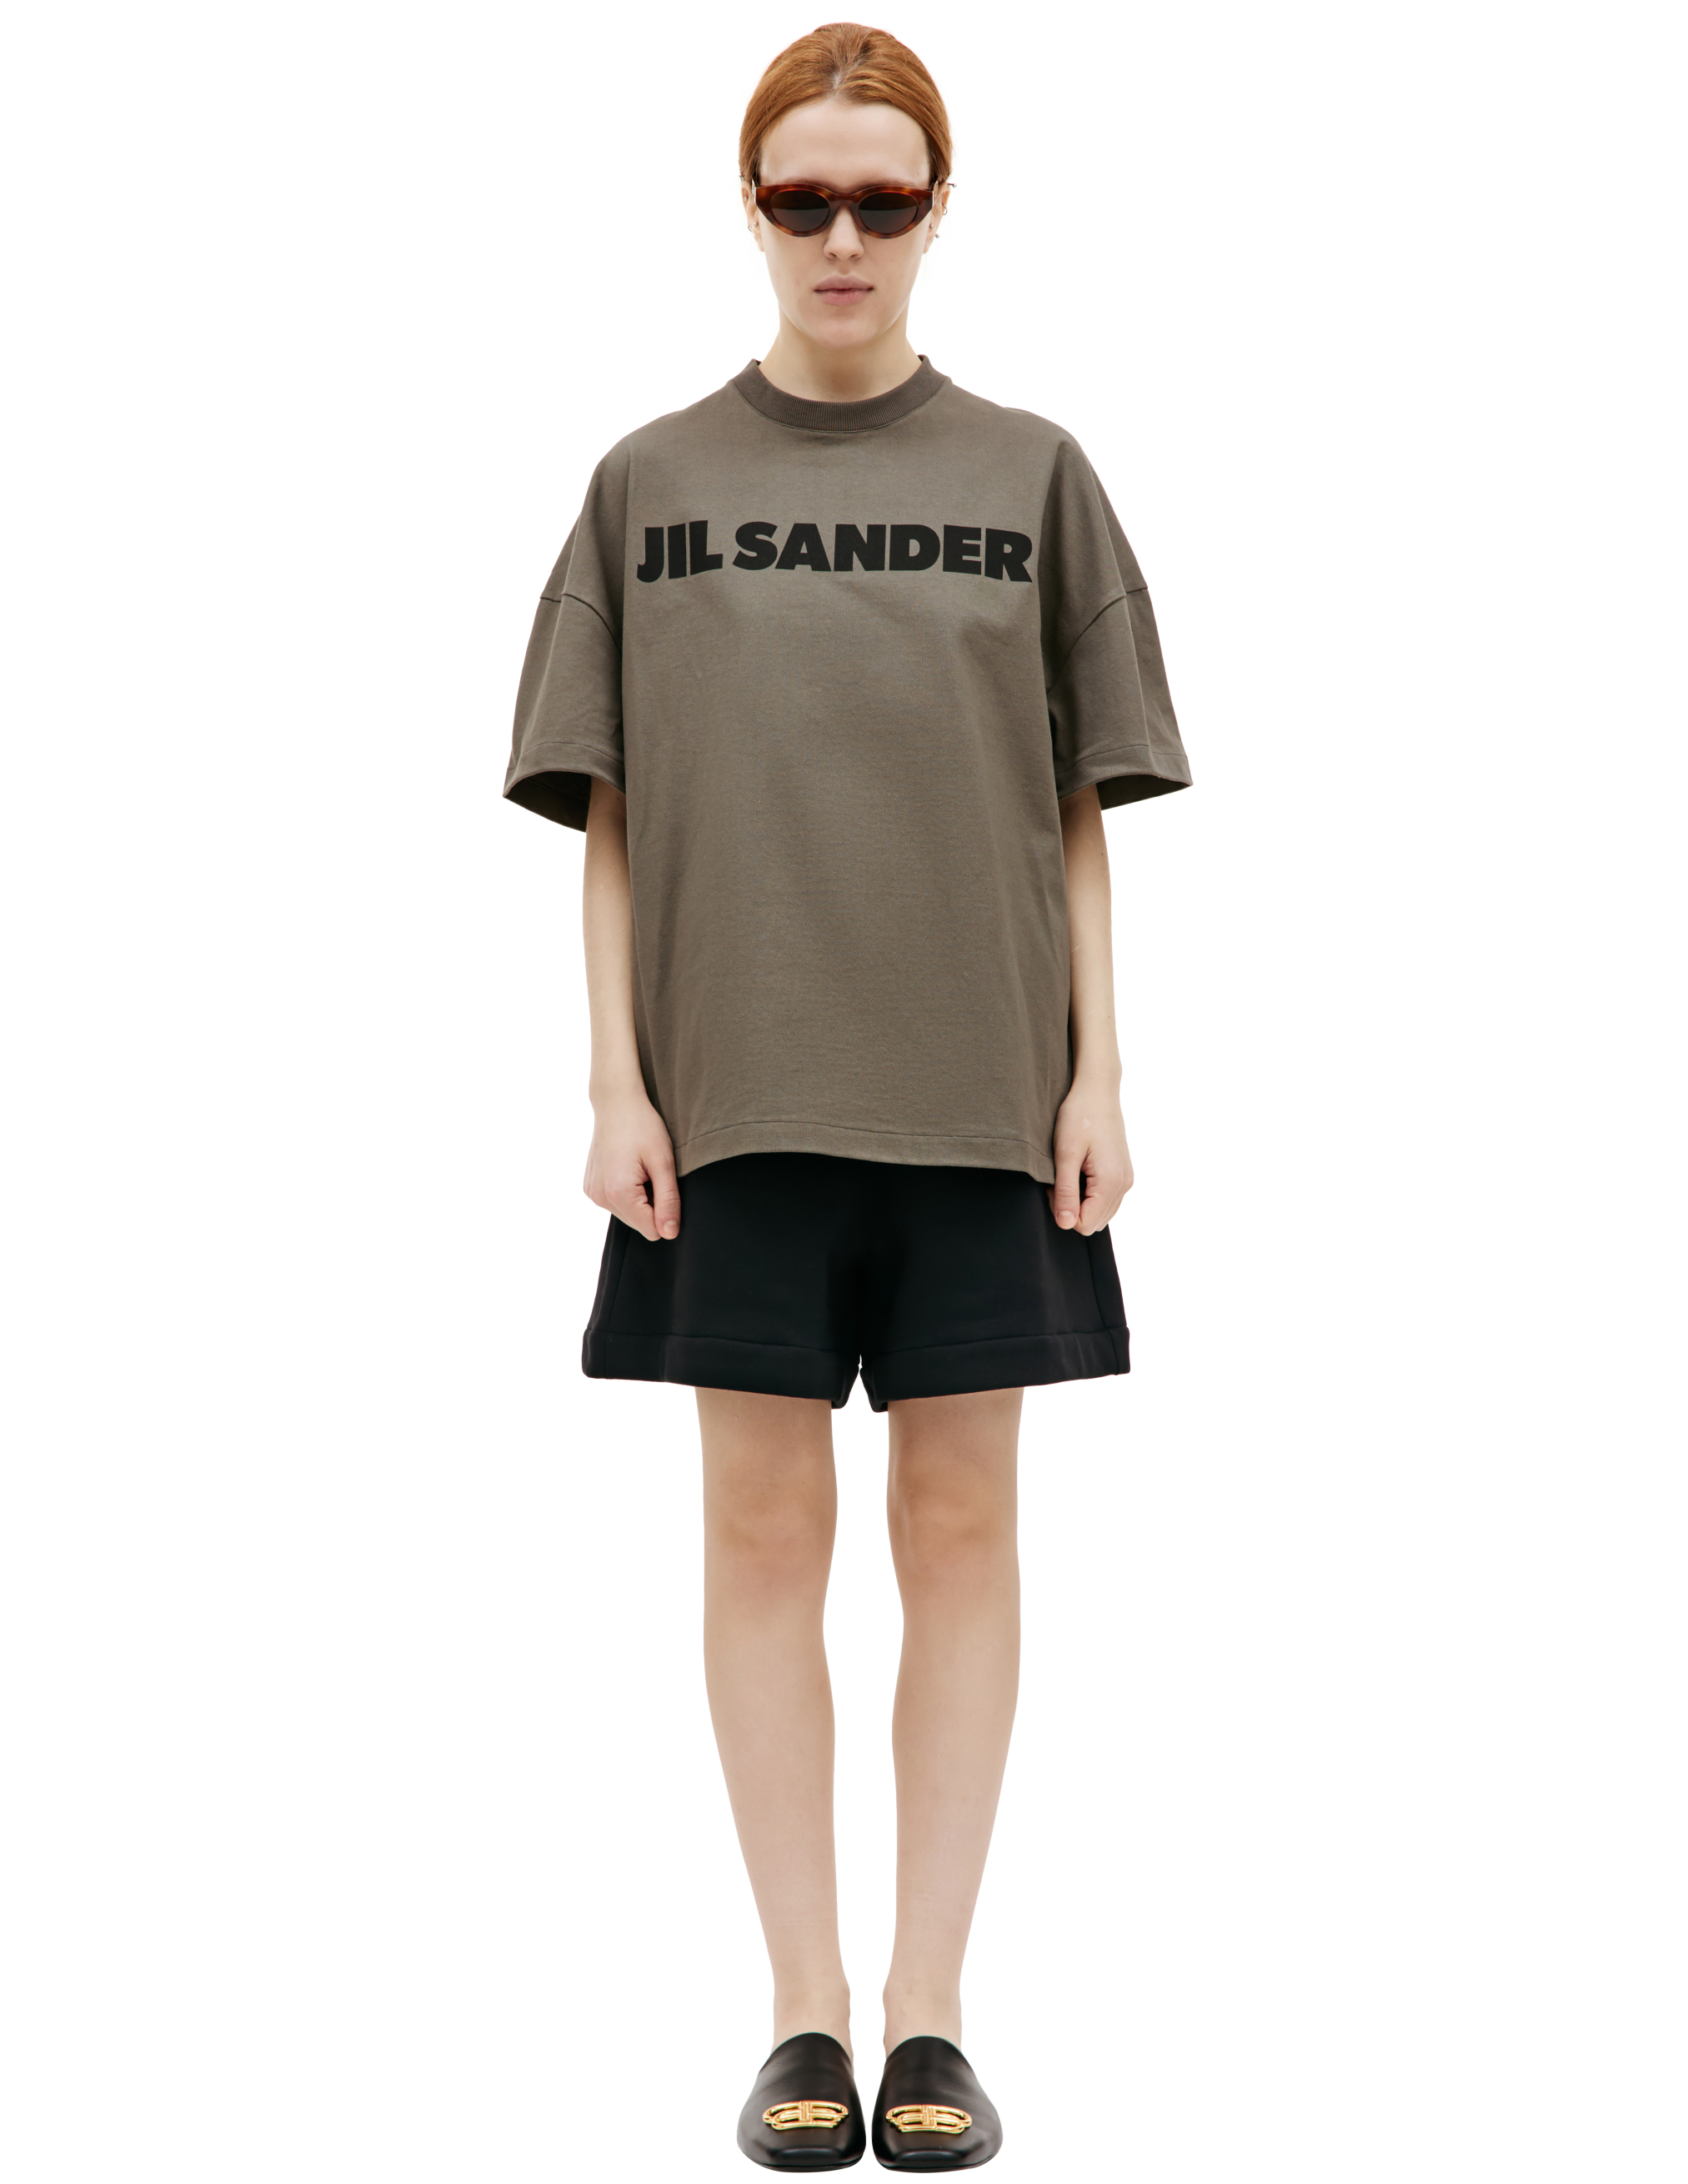 Оверсайз футболка с логотипом Jil Sander J21GC0001/J20215/312, размер S;M;L;XL